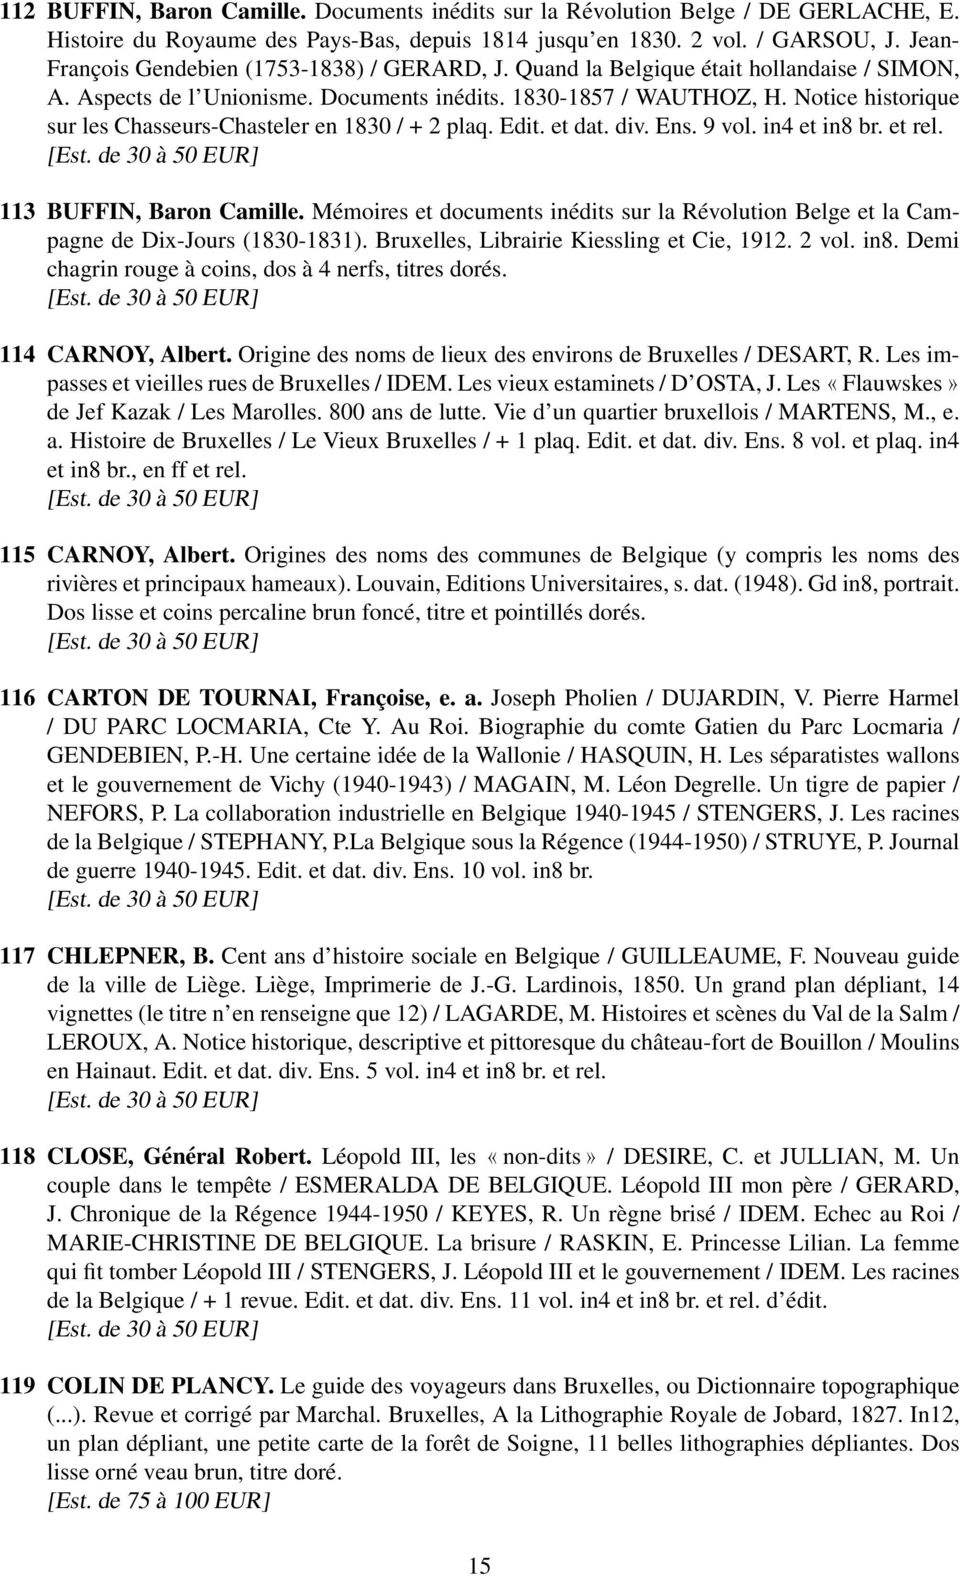 Notice historique sur les Chasseurs-Chasteler en 1830 / + 2 plaq. Edit. et dat. div. Ens. 9 vol. in4 et in8 br. et rel. 113 BUFFIN, Baron Camille.